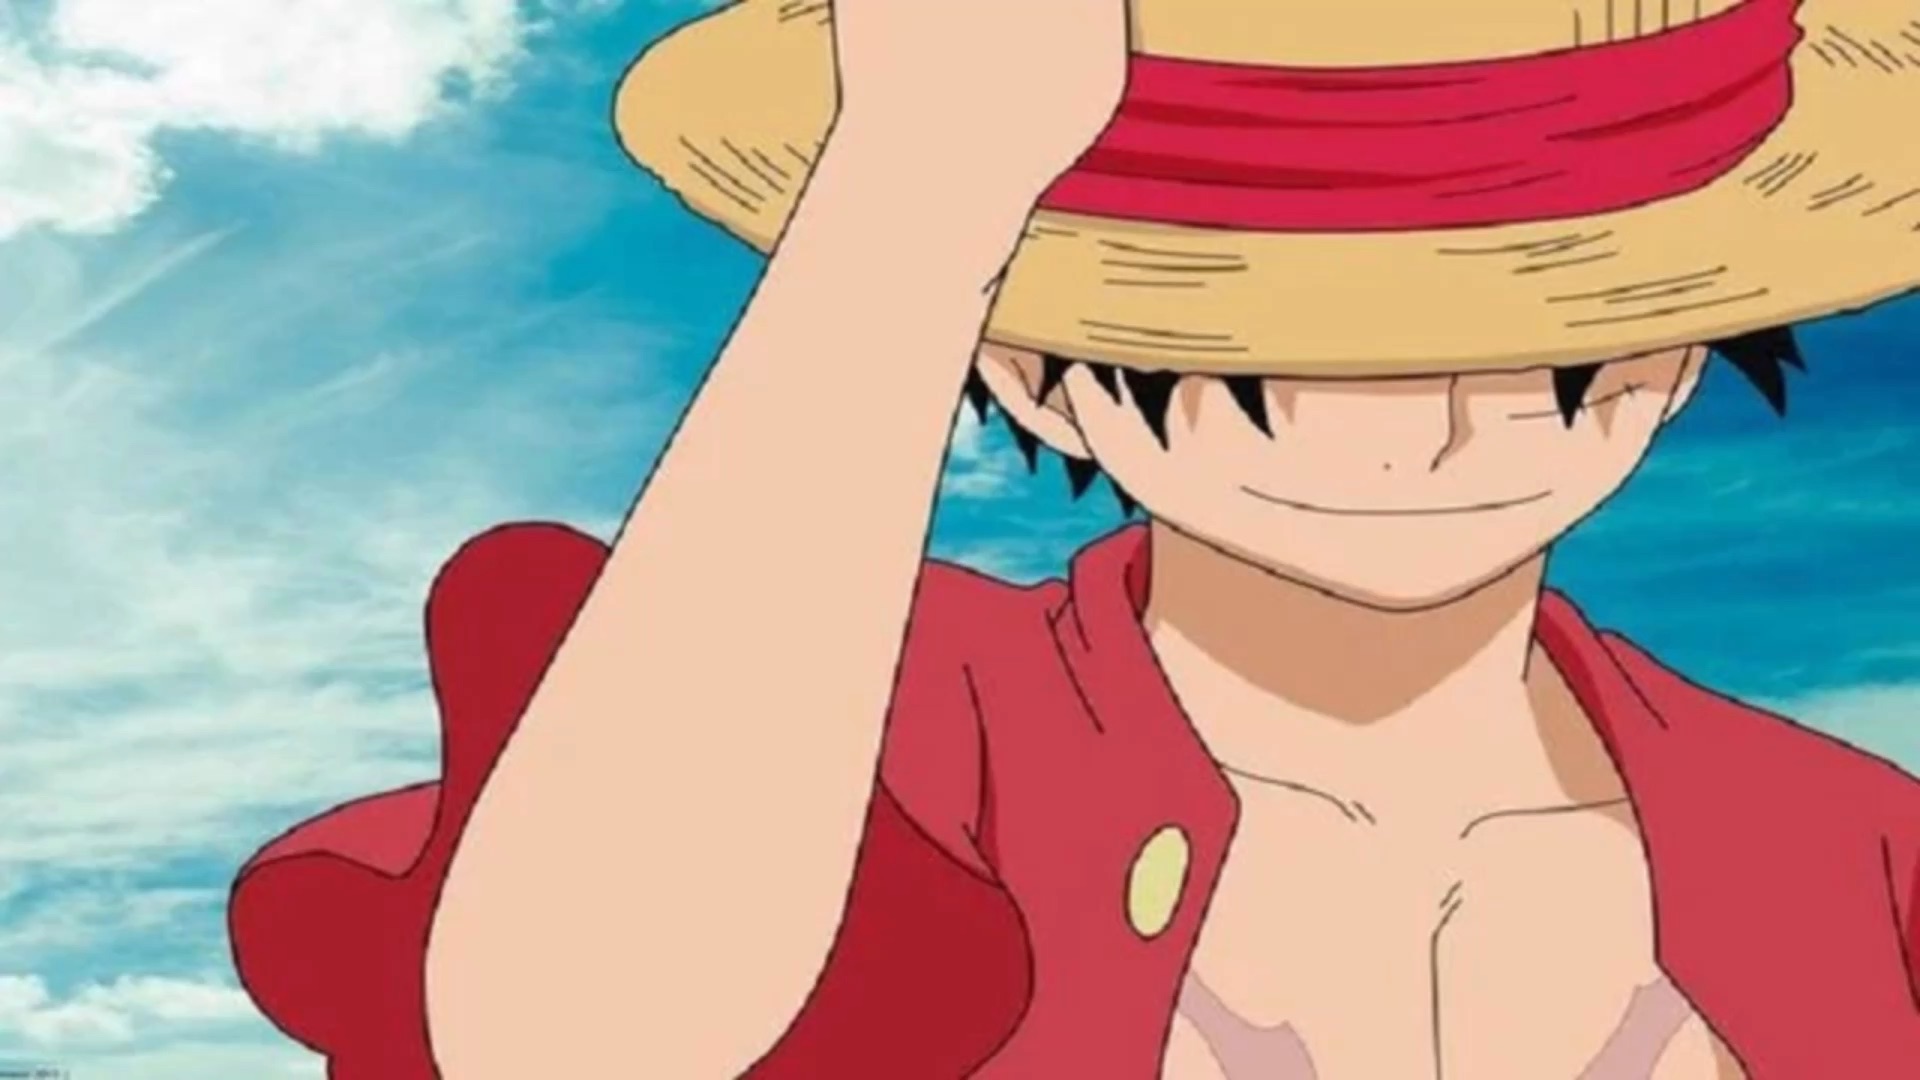 Luffy là nhân vật chính rất đáng yêu và hài hước trong bộ truyện tranh nổi tiếng One Piece. Nếu bạn là fan của bộ truyện này, chắc hẳn sẽ rất thích xem những hình ảnh về Luffy đúng không? Hãy cùng xem những hình ảnh đáng yêu và hài hước về Luffy tại đây!